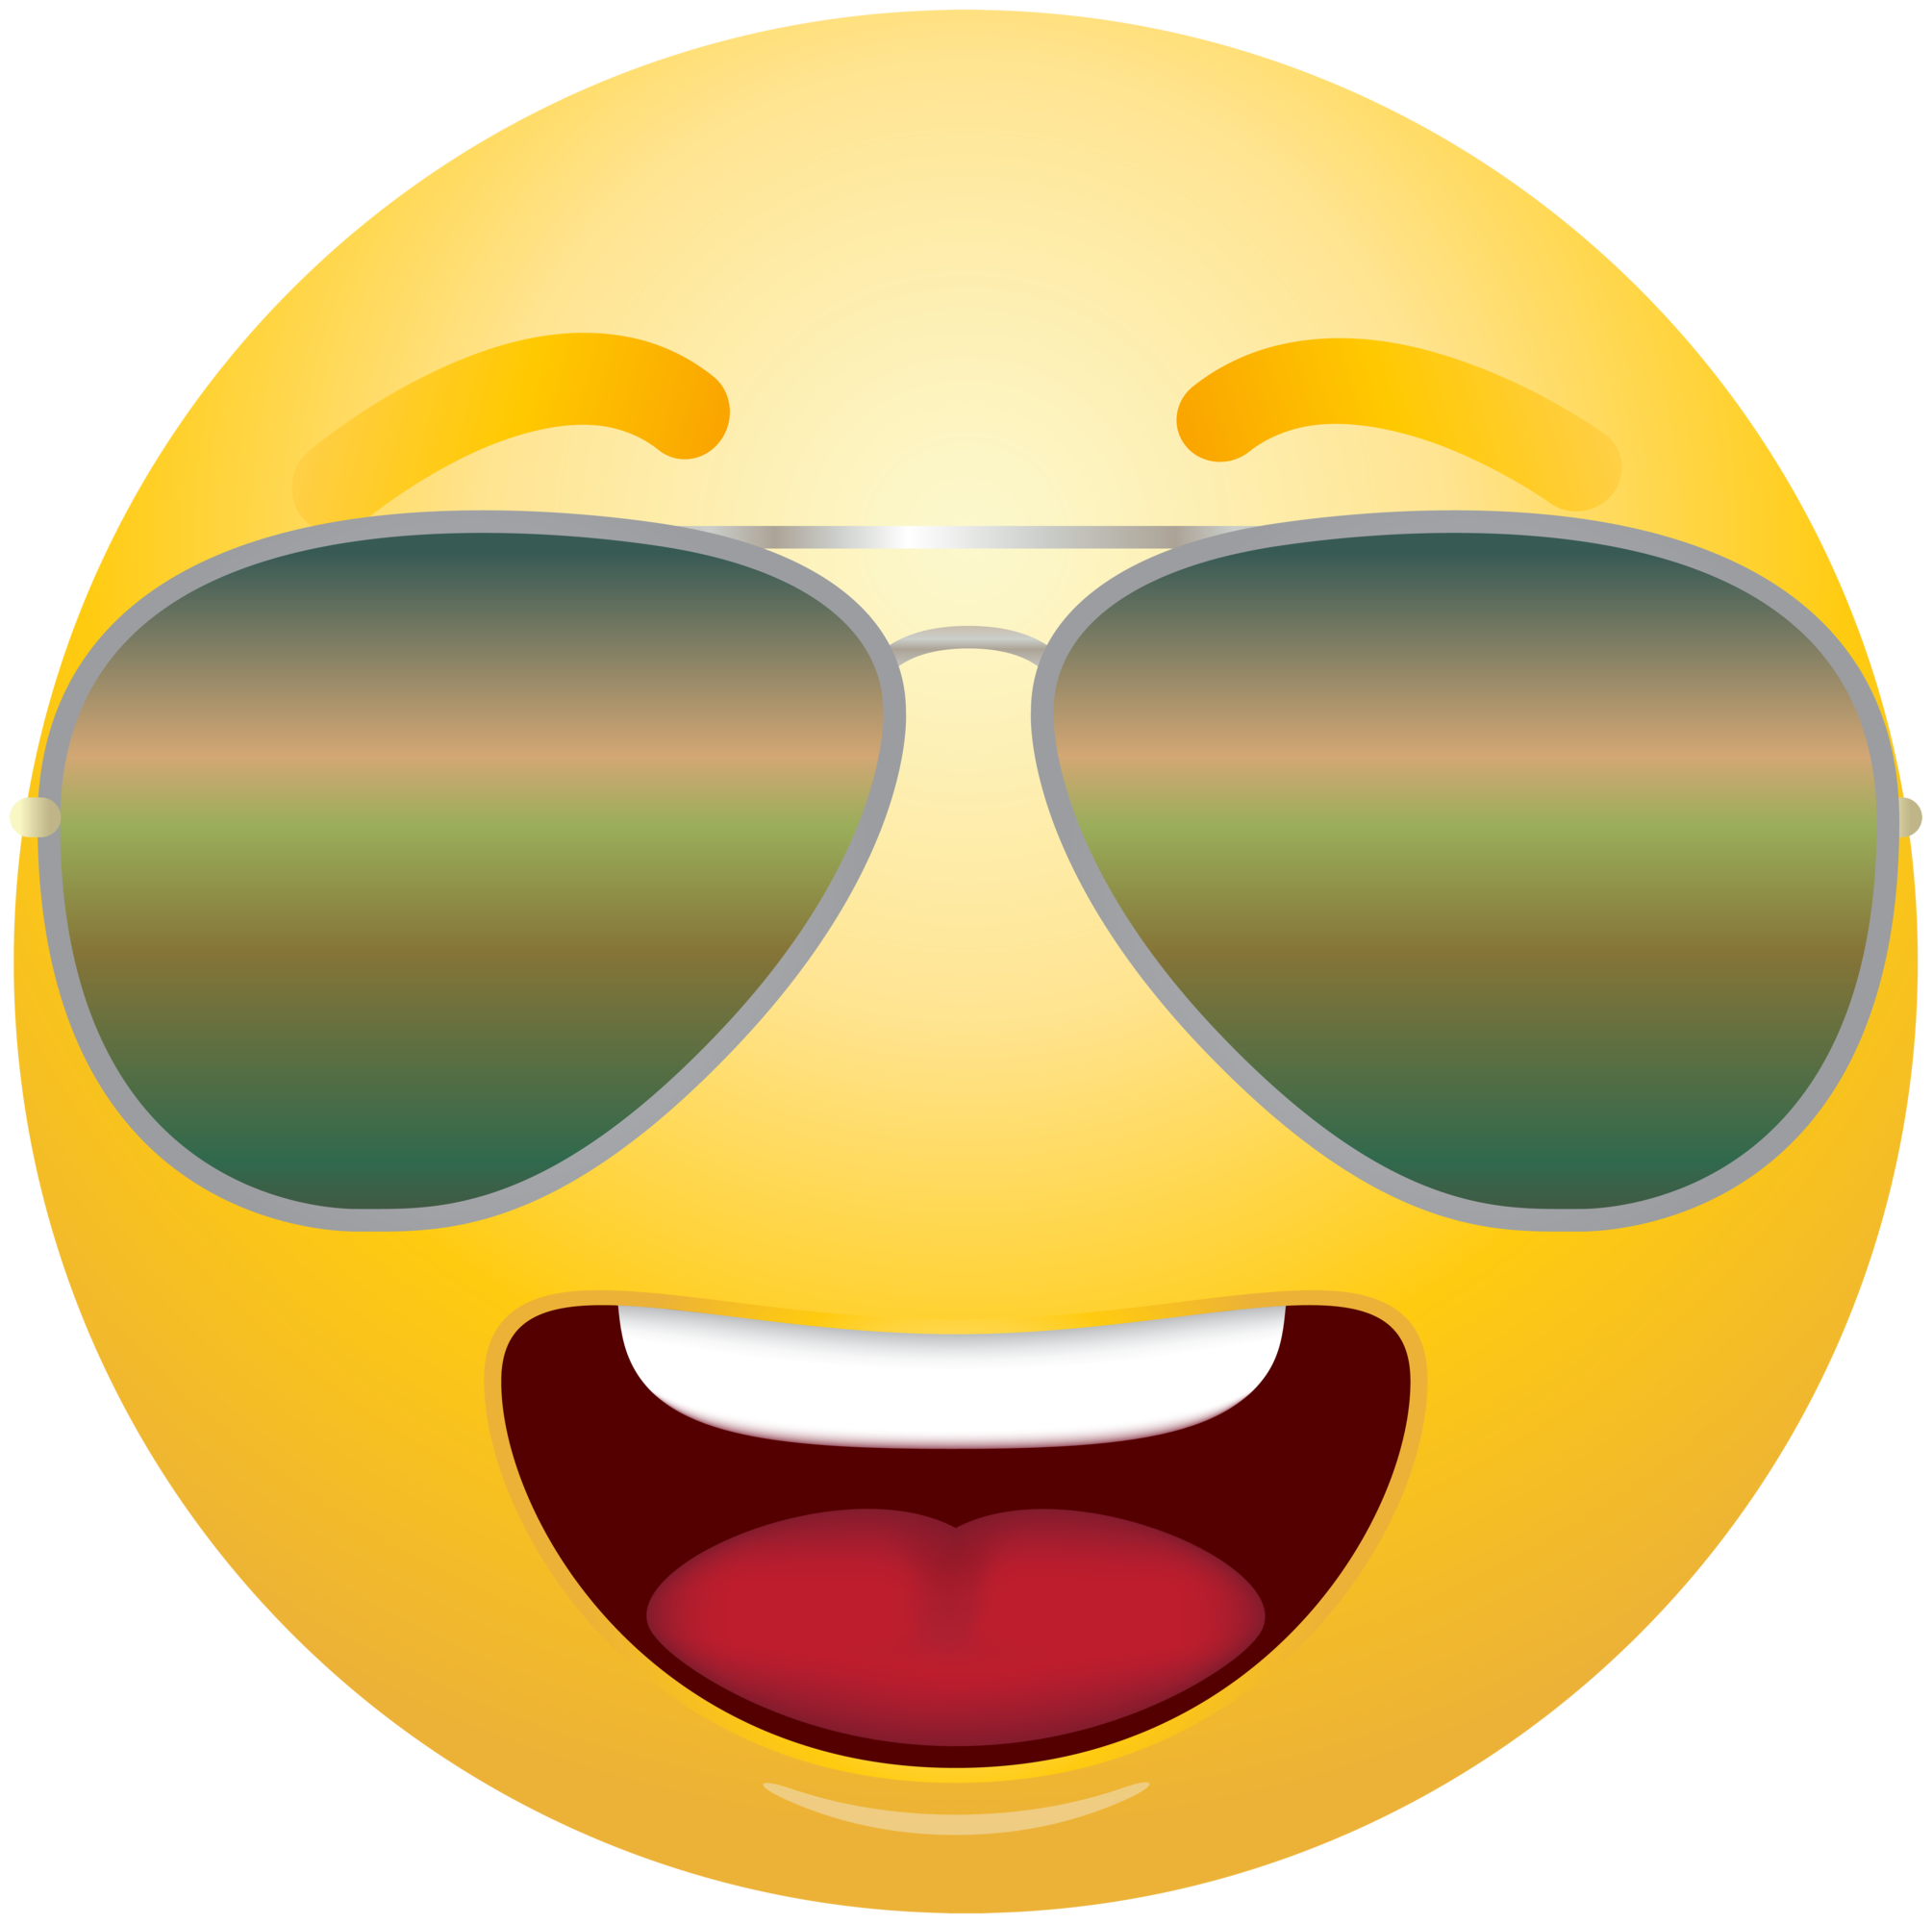 Sunglasses Emoji Clipart Sunglasses Smiley Face Transparent Cartoon